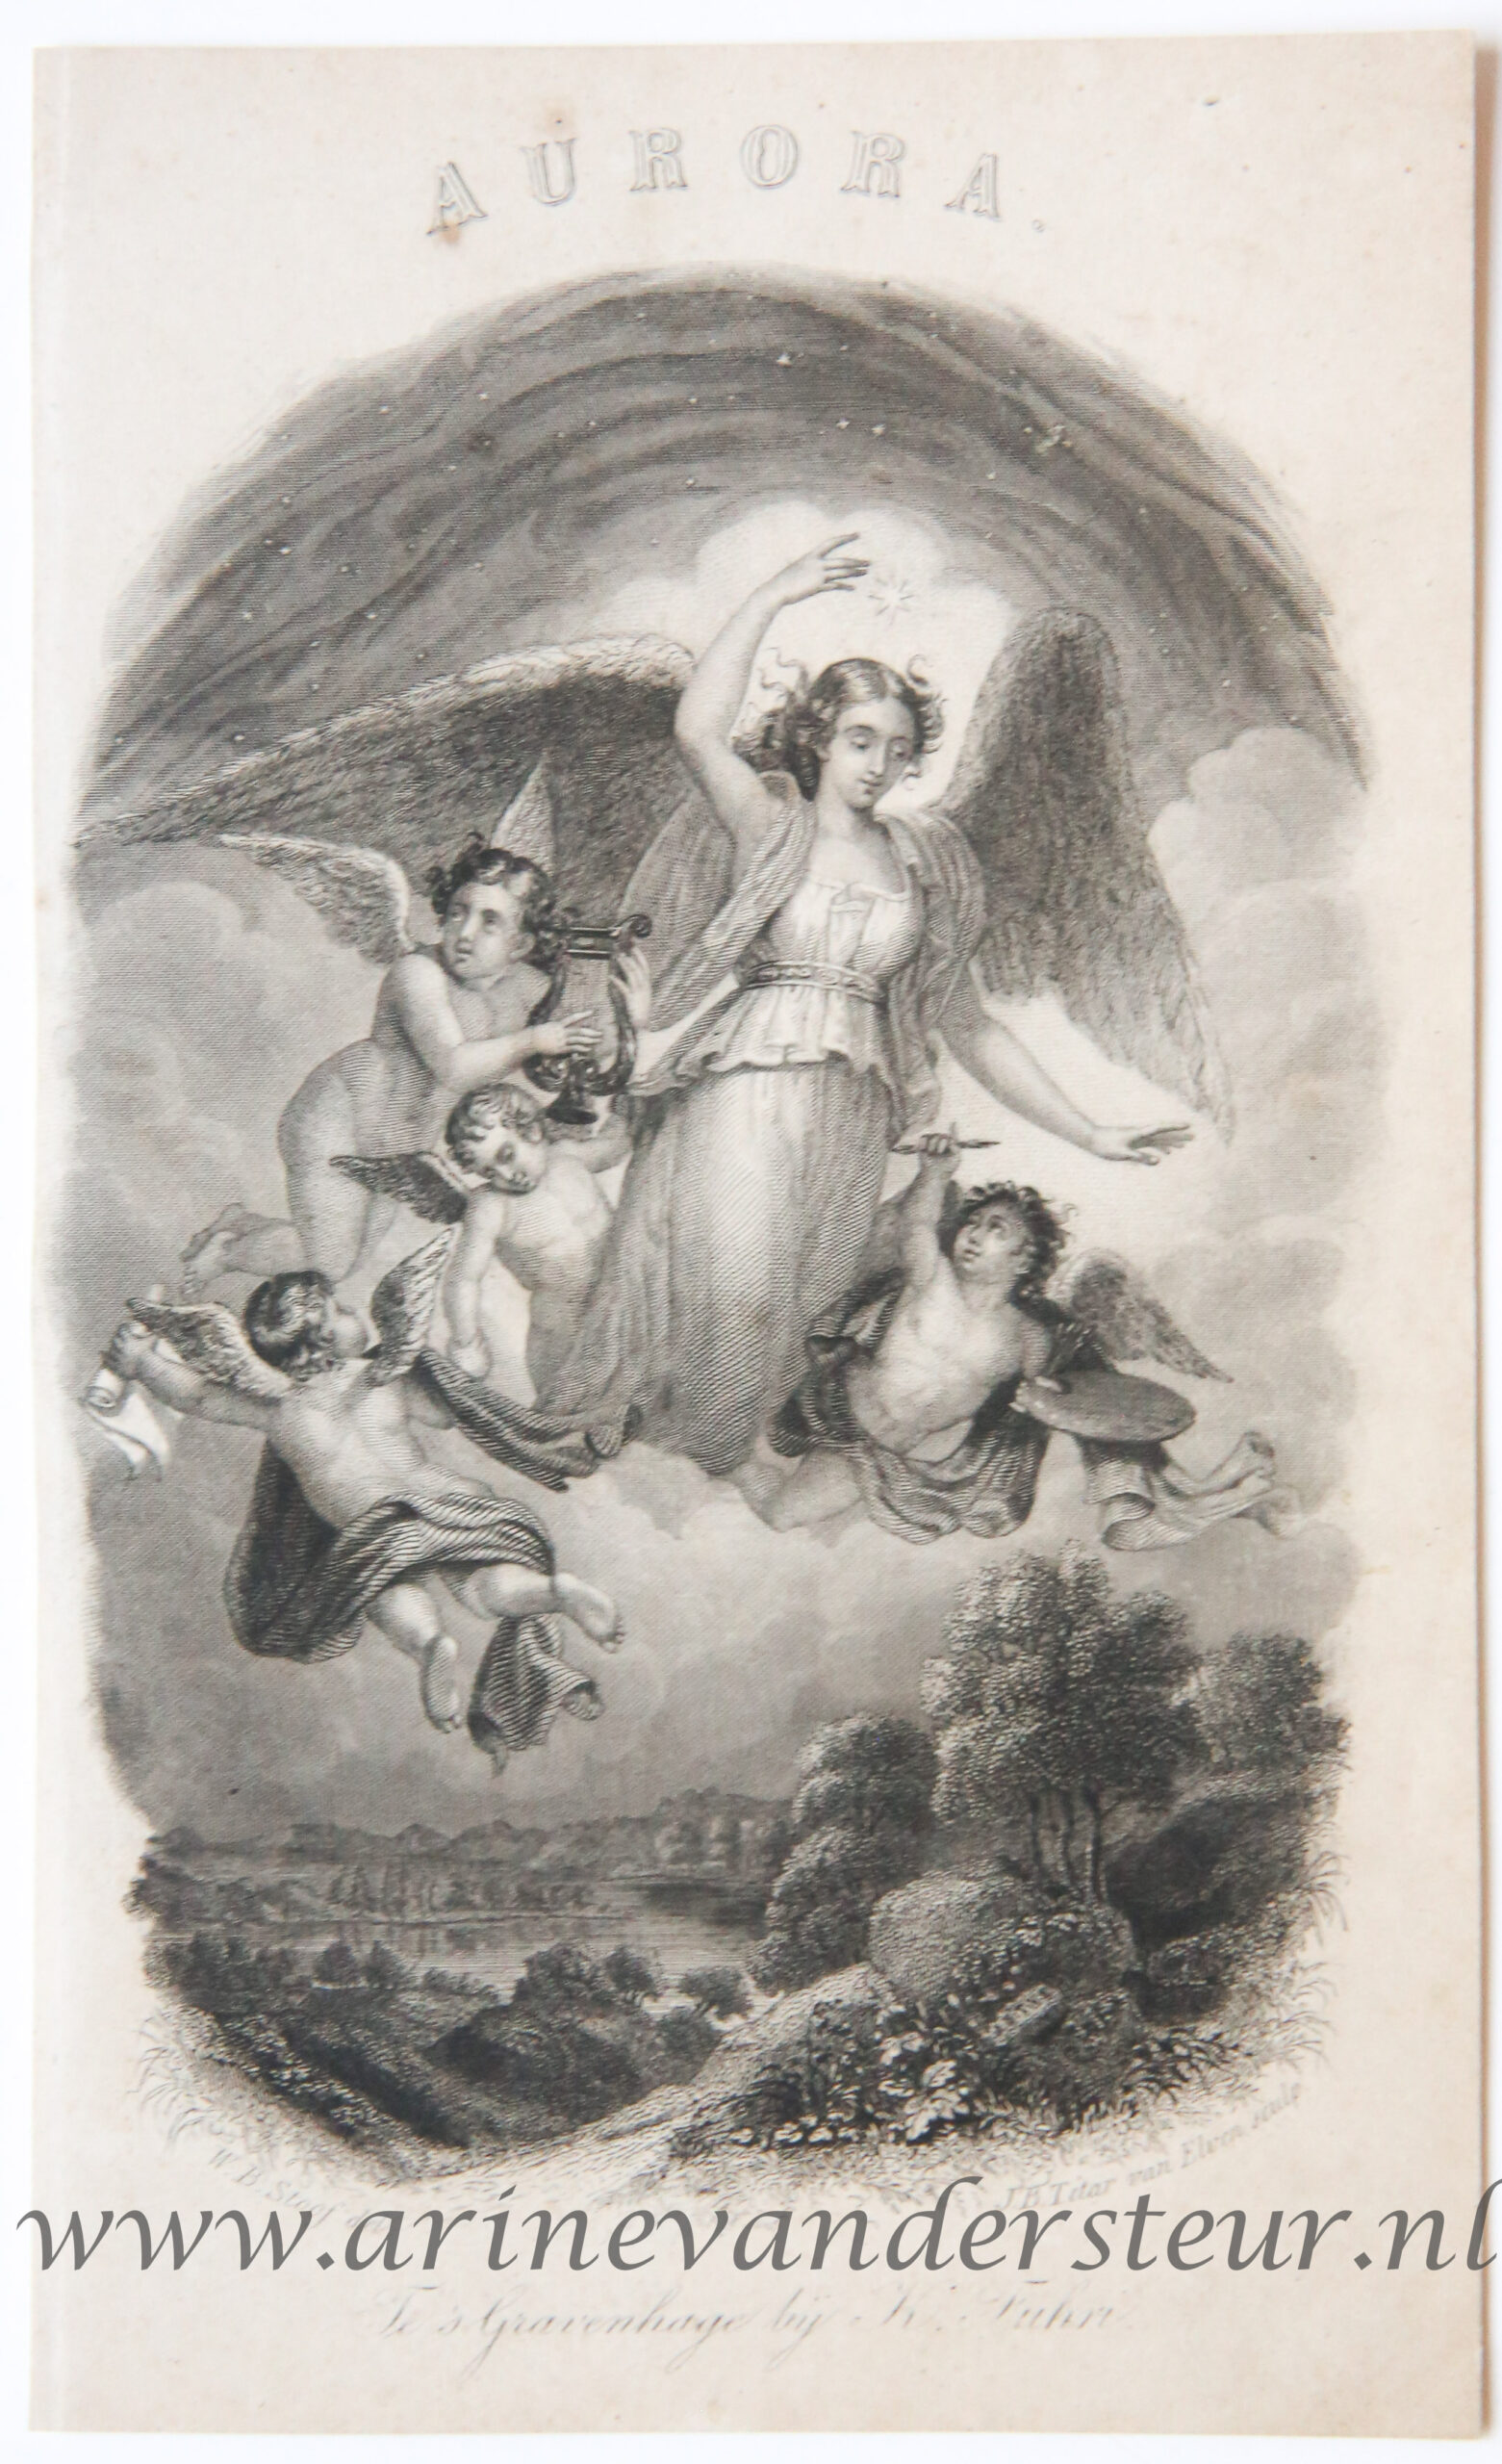 [Antique title page, ca. 1841] AURORA, published ca. 1841, 1 p.